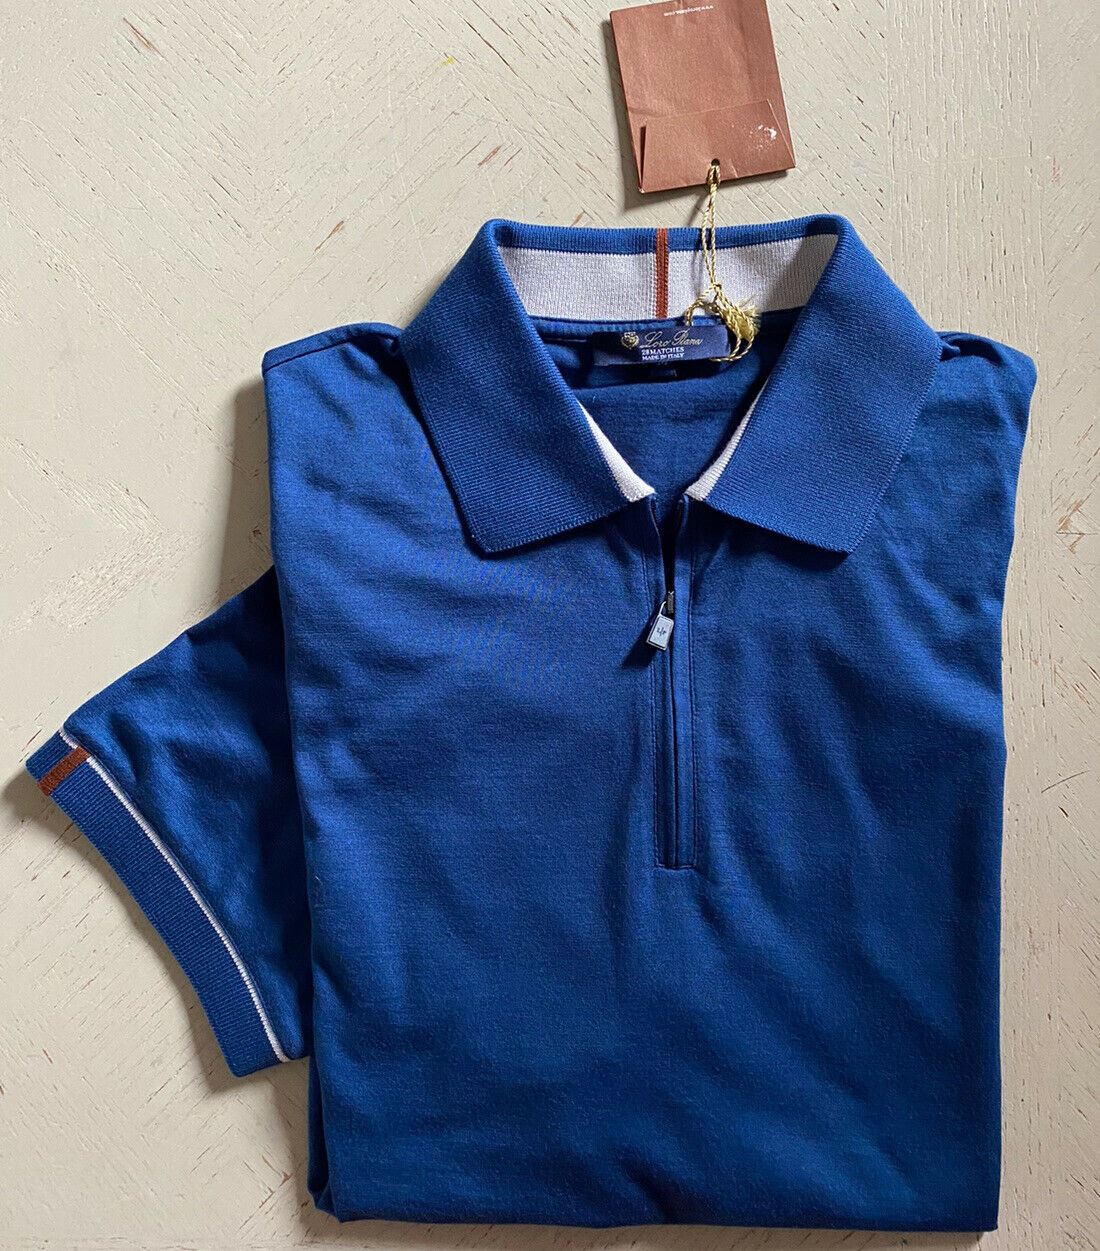 Neu mit Etikett: 735 $ Loro Piana Baumwoll-/Polyester-Poloshirt mit Ärmeln, Blau, Größe M